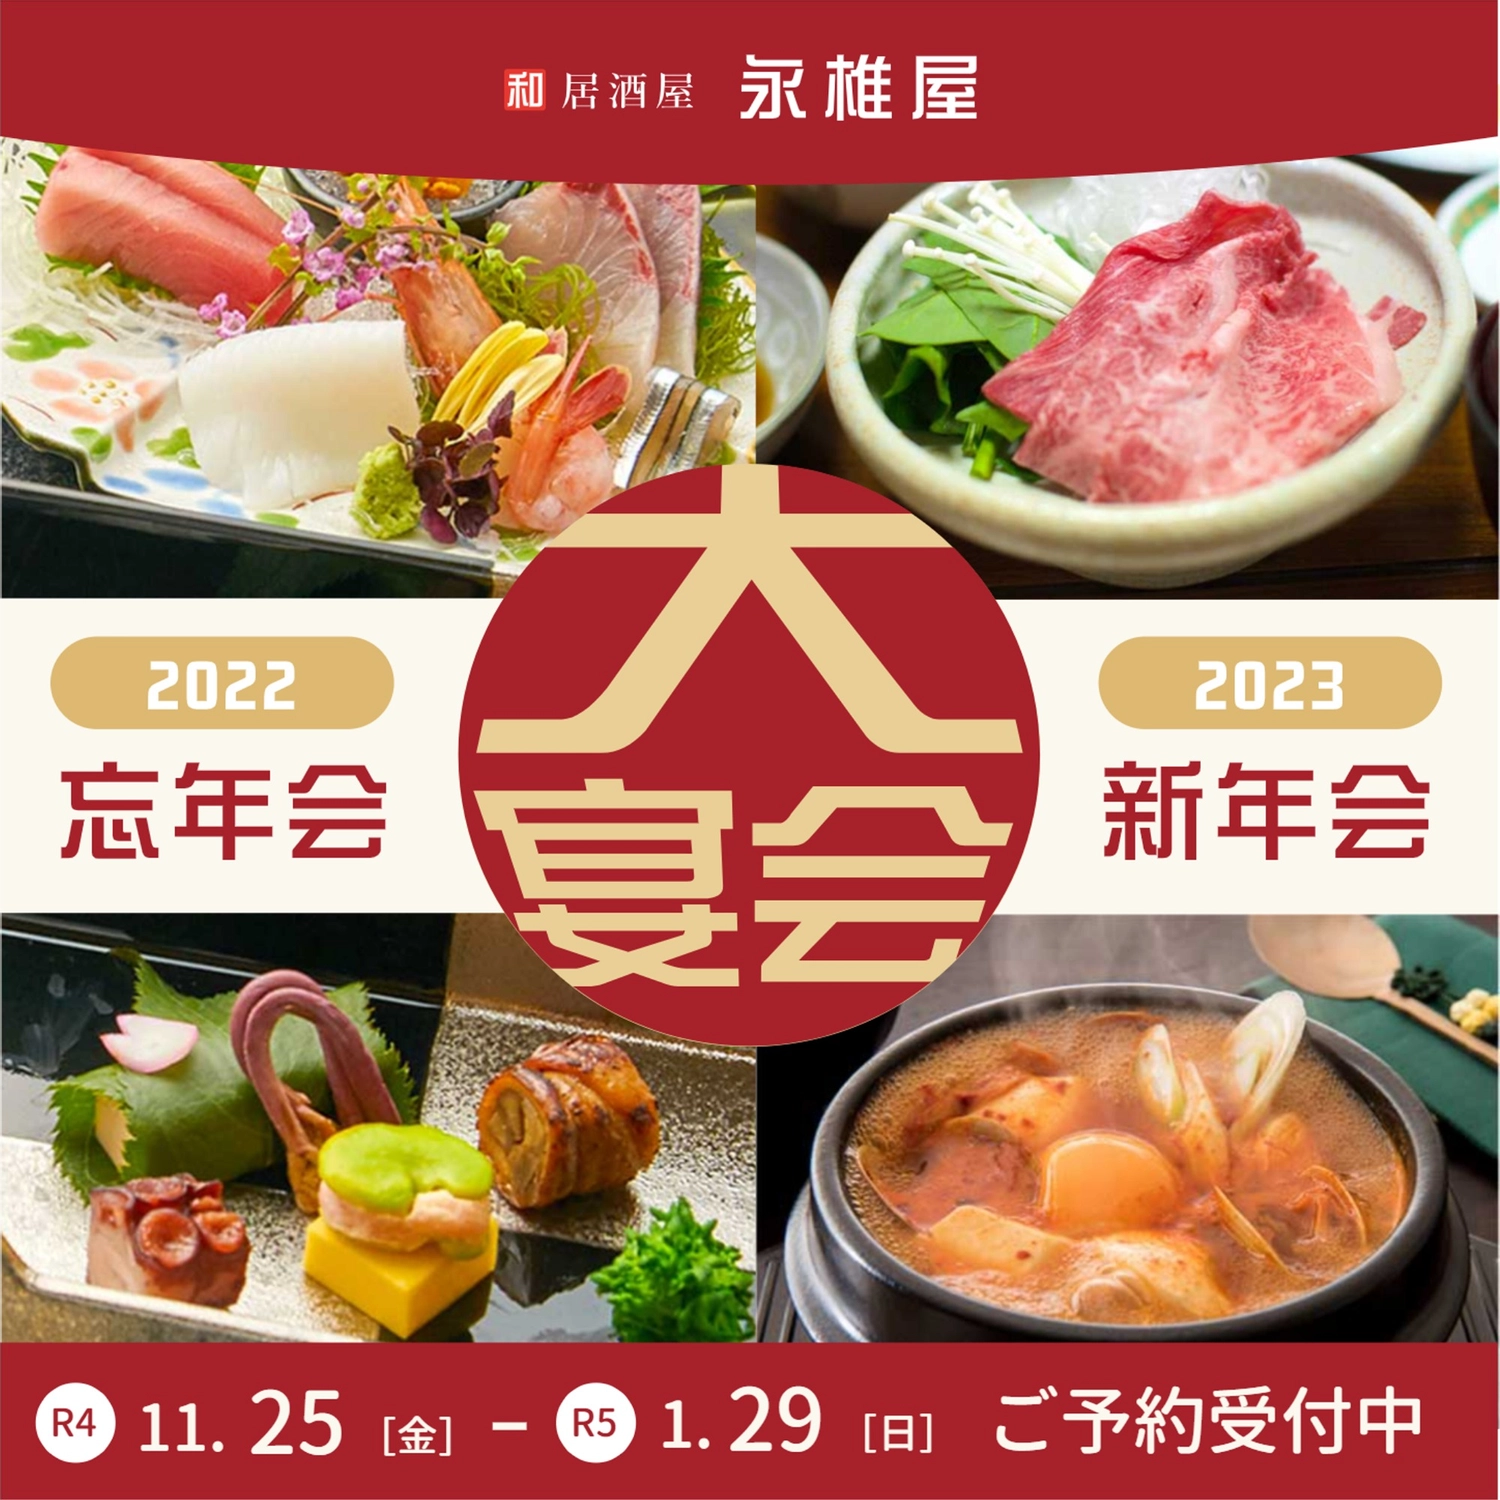 正方形の複数の料理の写真を使った広告
, nhà hàng, cuối năm, khởi đầu năm mới, Instagram Post mẫu